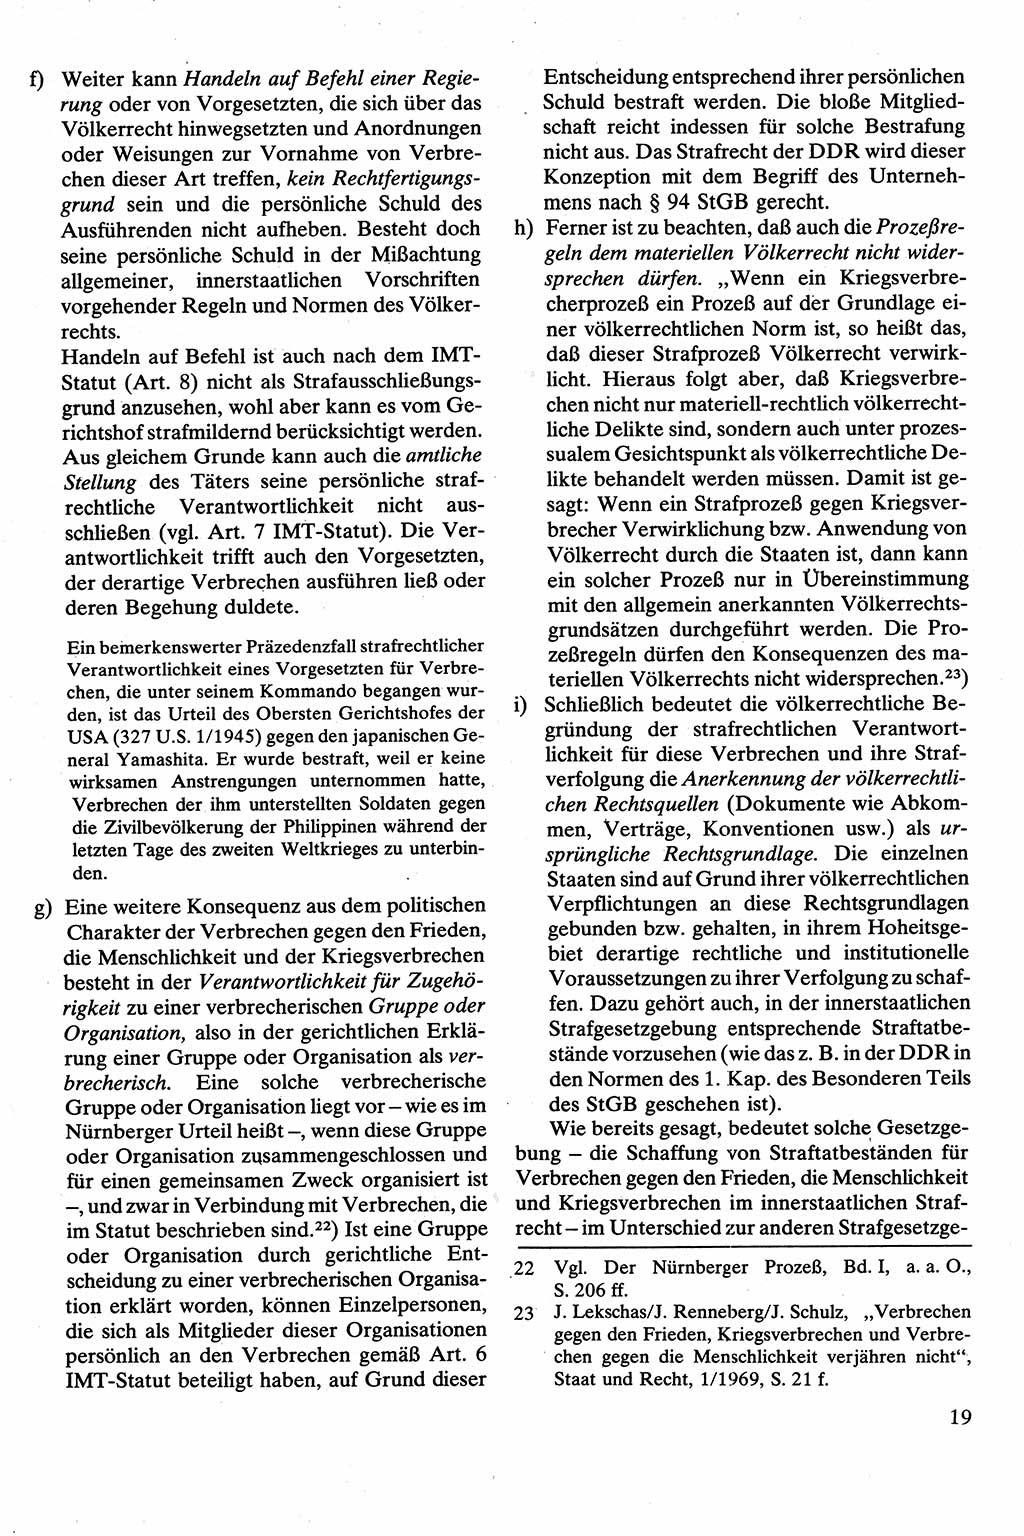 Strafrecht [Deutsche Demokratische Republik (DDR)], Besonderer Teil, Lehrbuch 1981, Seite 19 (Strafr. DDR BT Lb. 1981, S. 19)